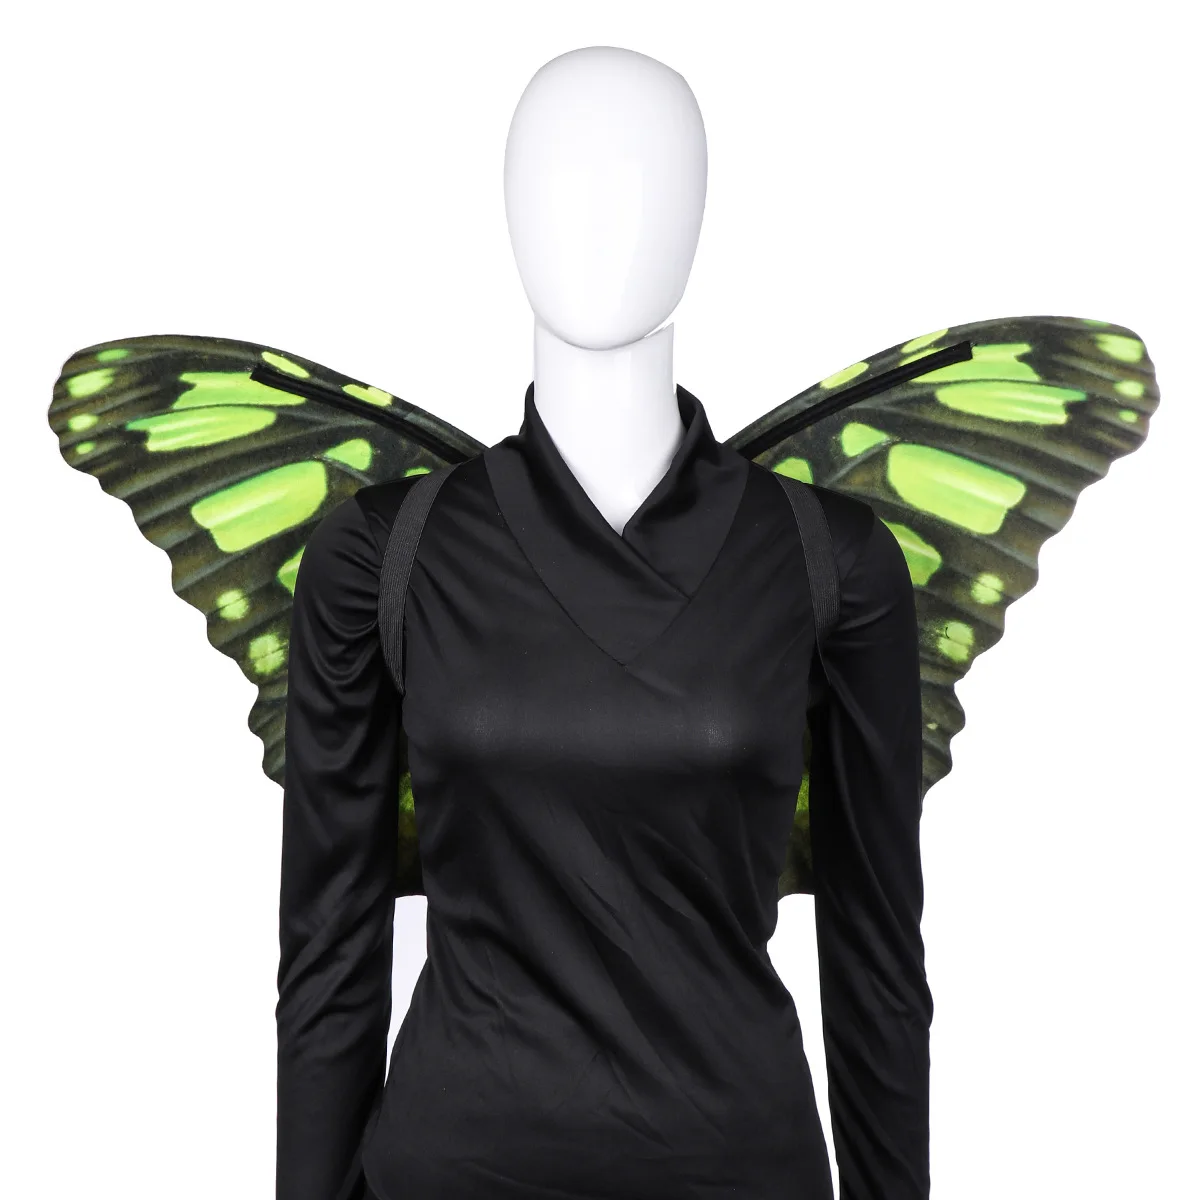 Новинка 2019, костюм с крыльями бабочки для взрослых, костюм для вечеринки на Хэллоуин для женщин, топ для девочек, аниме, карнавальный костюм